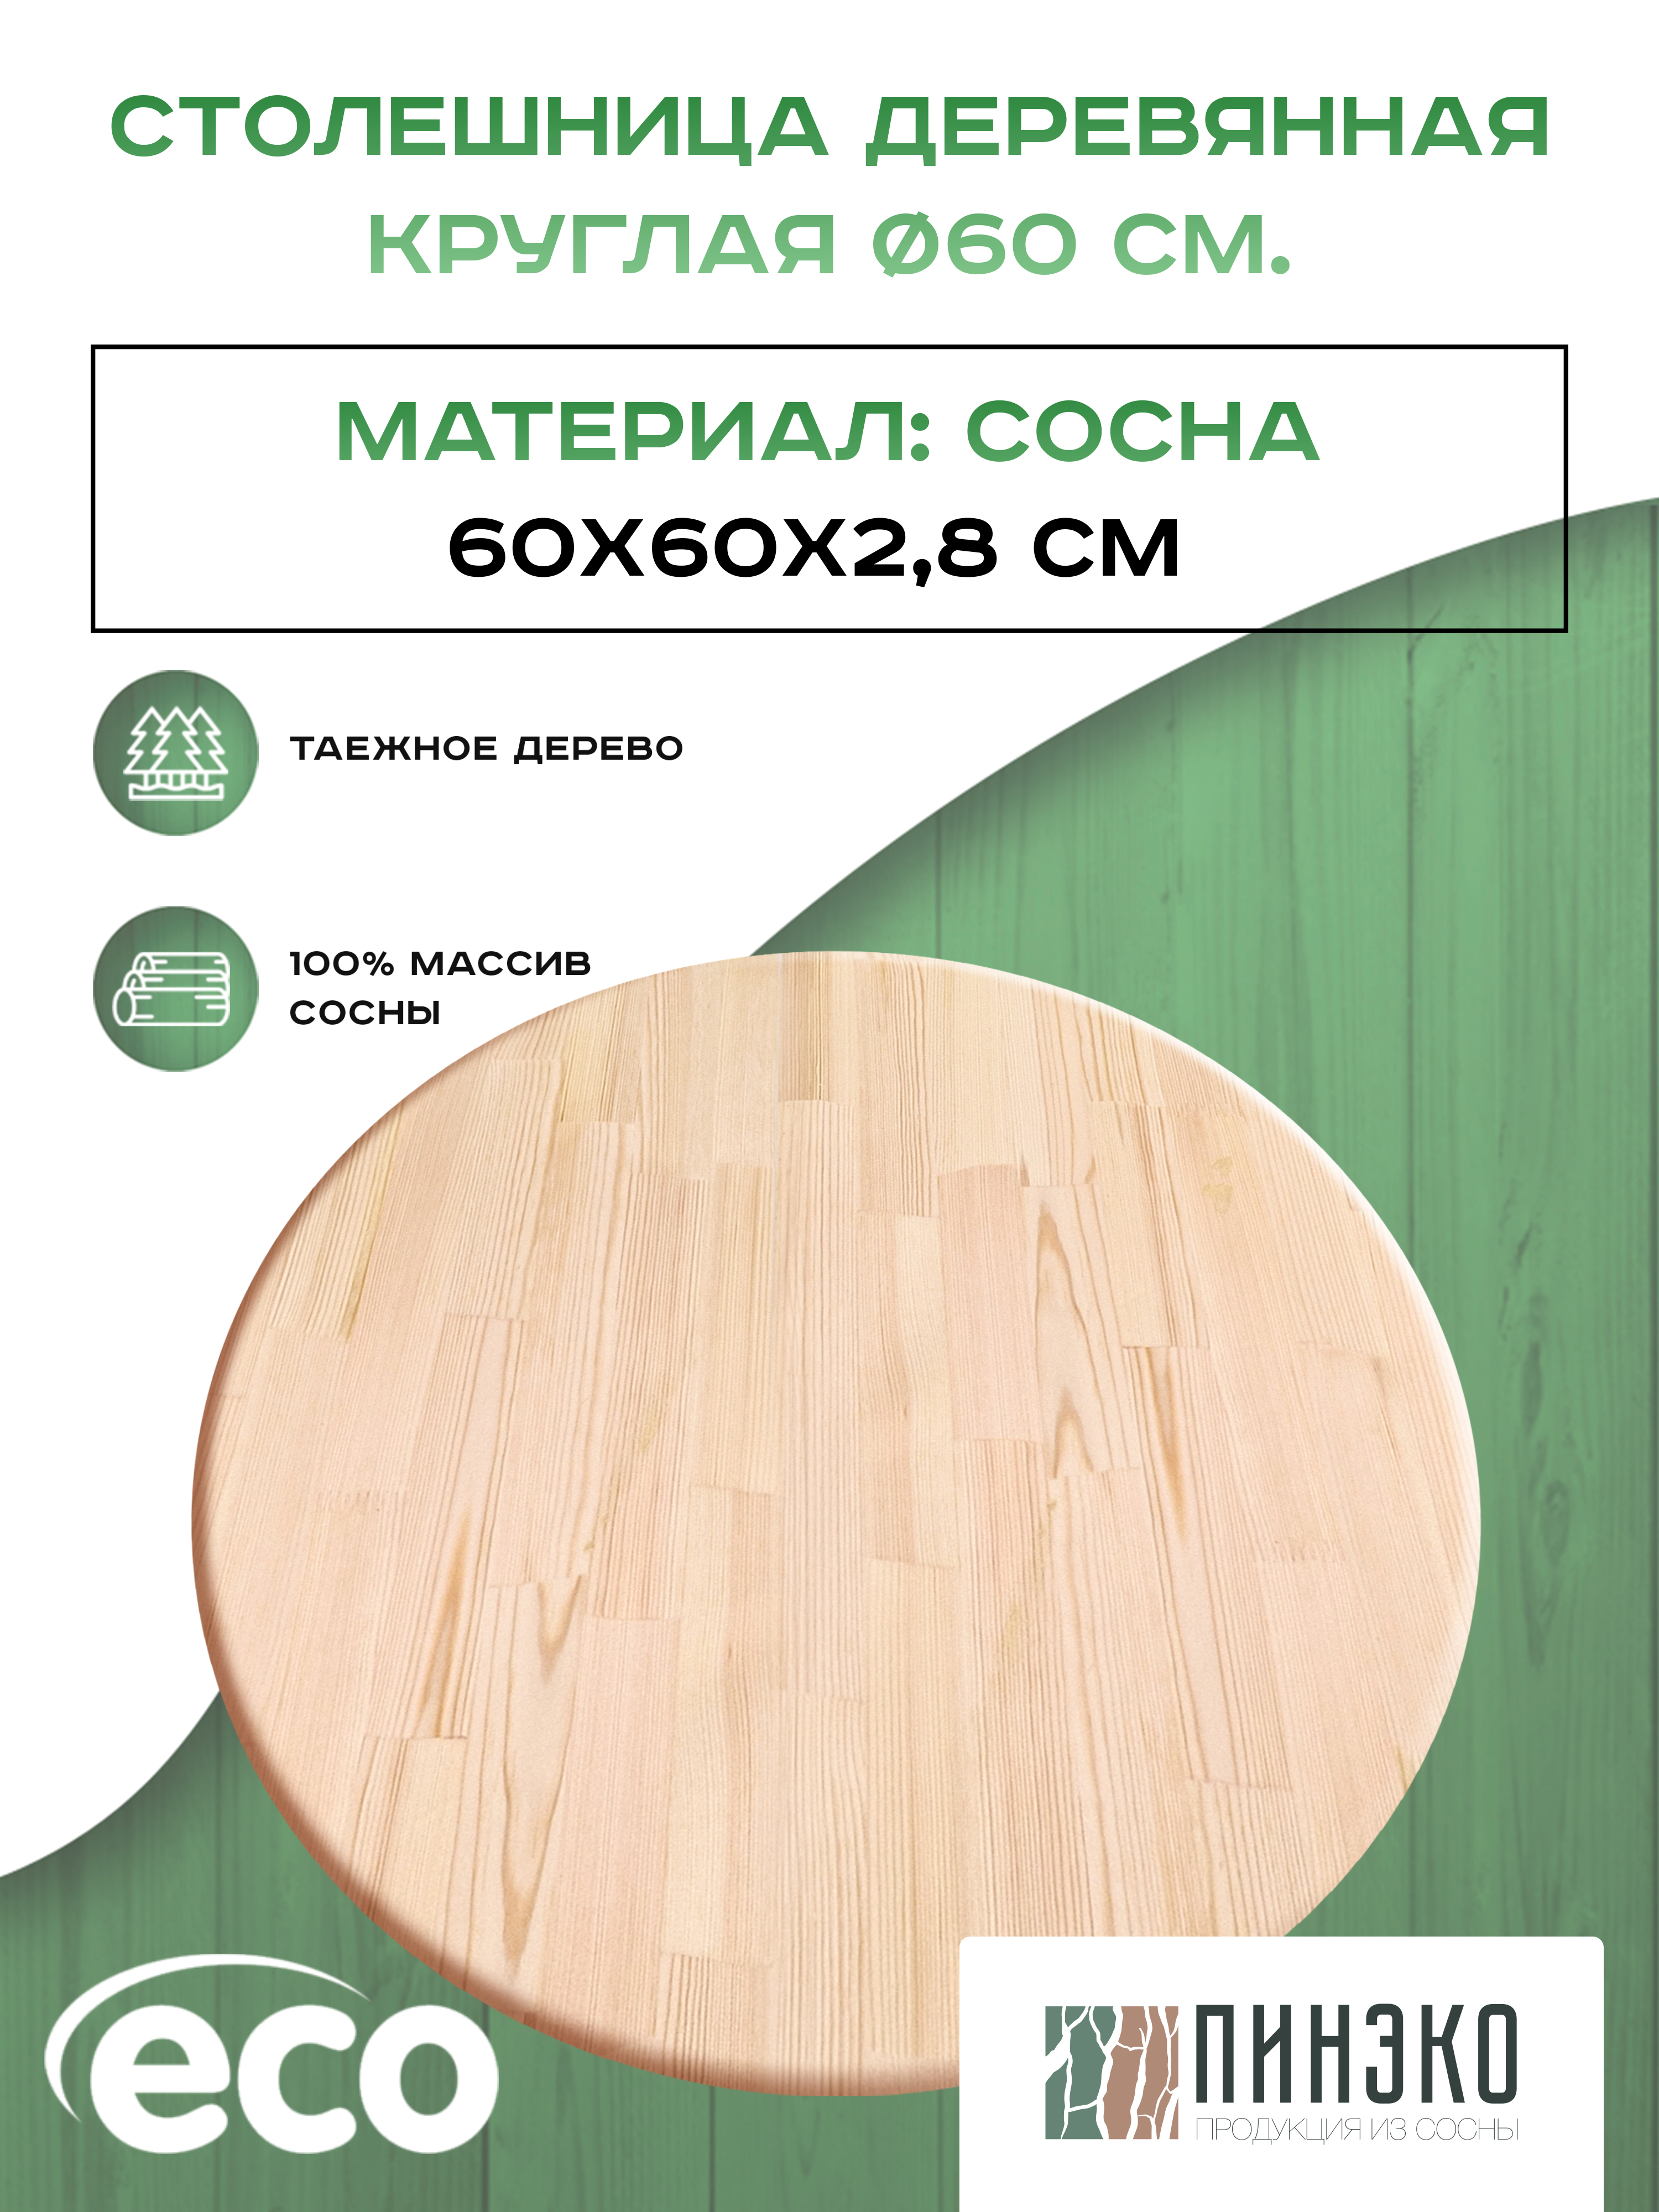 Столешница круглая 600 мм дерево. Вологодская сосна. Пинэко продукция из сосны. Купить деревья вологда